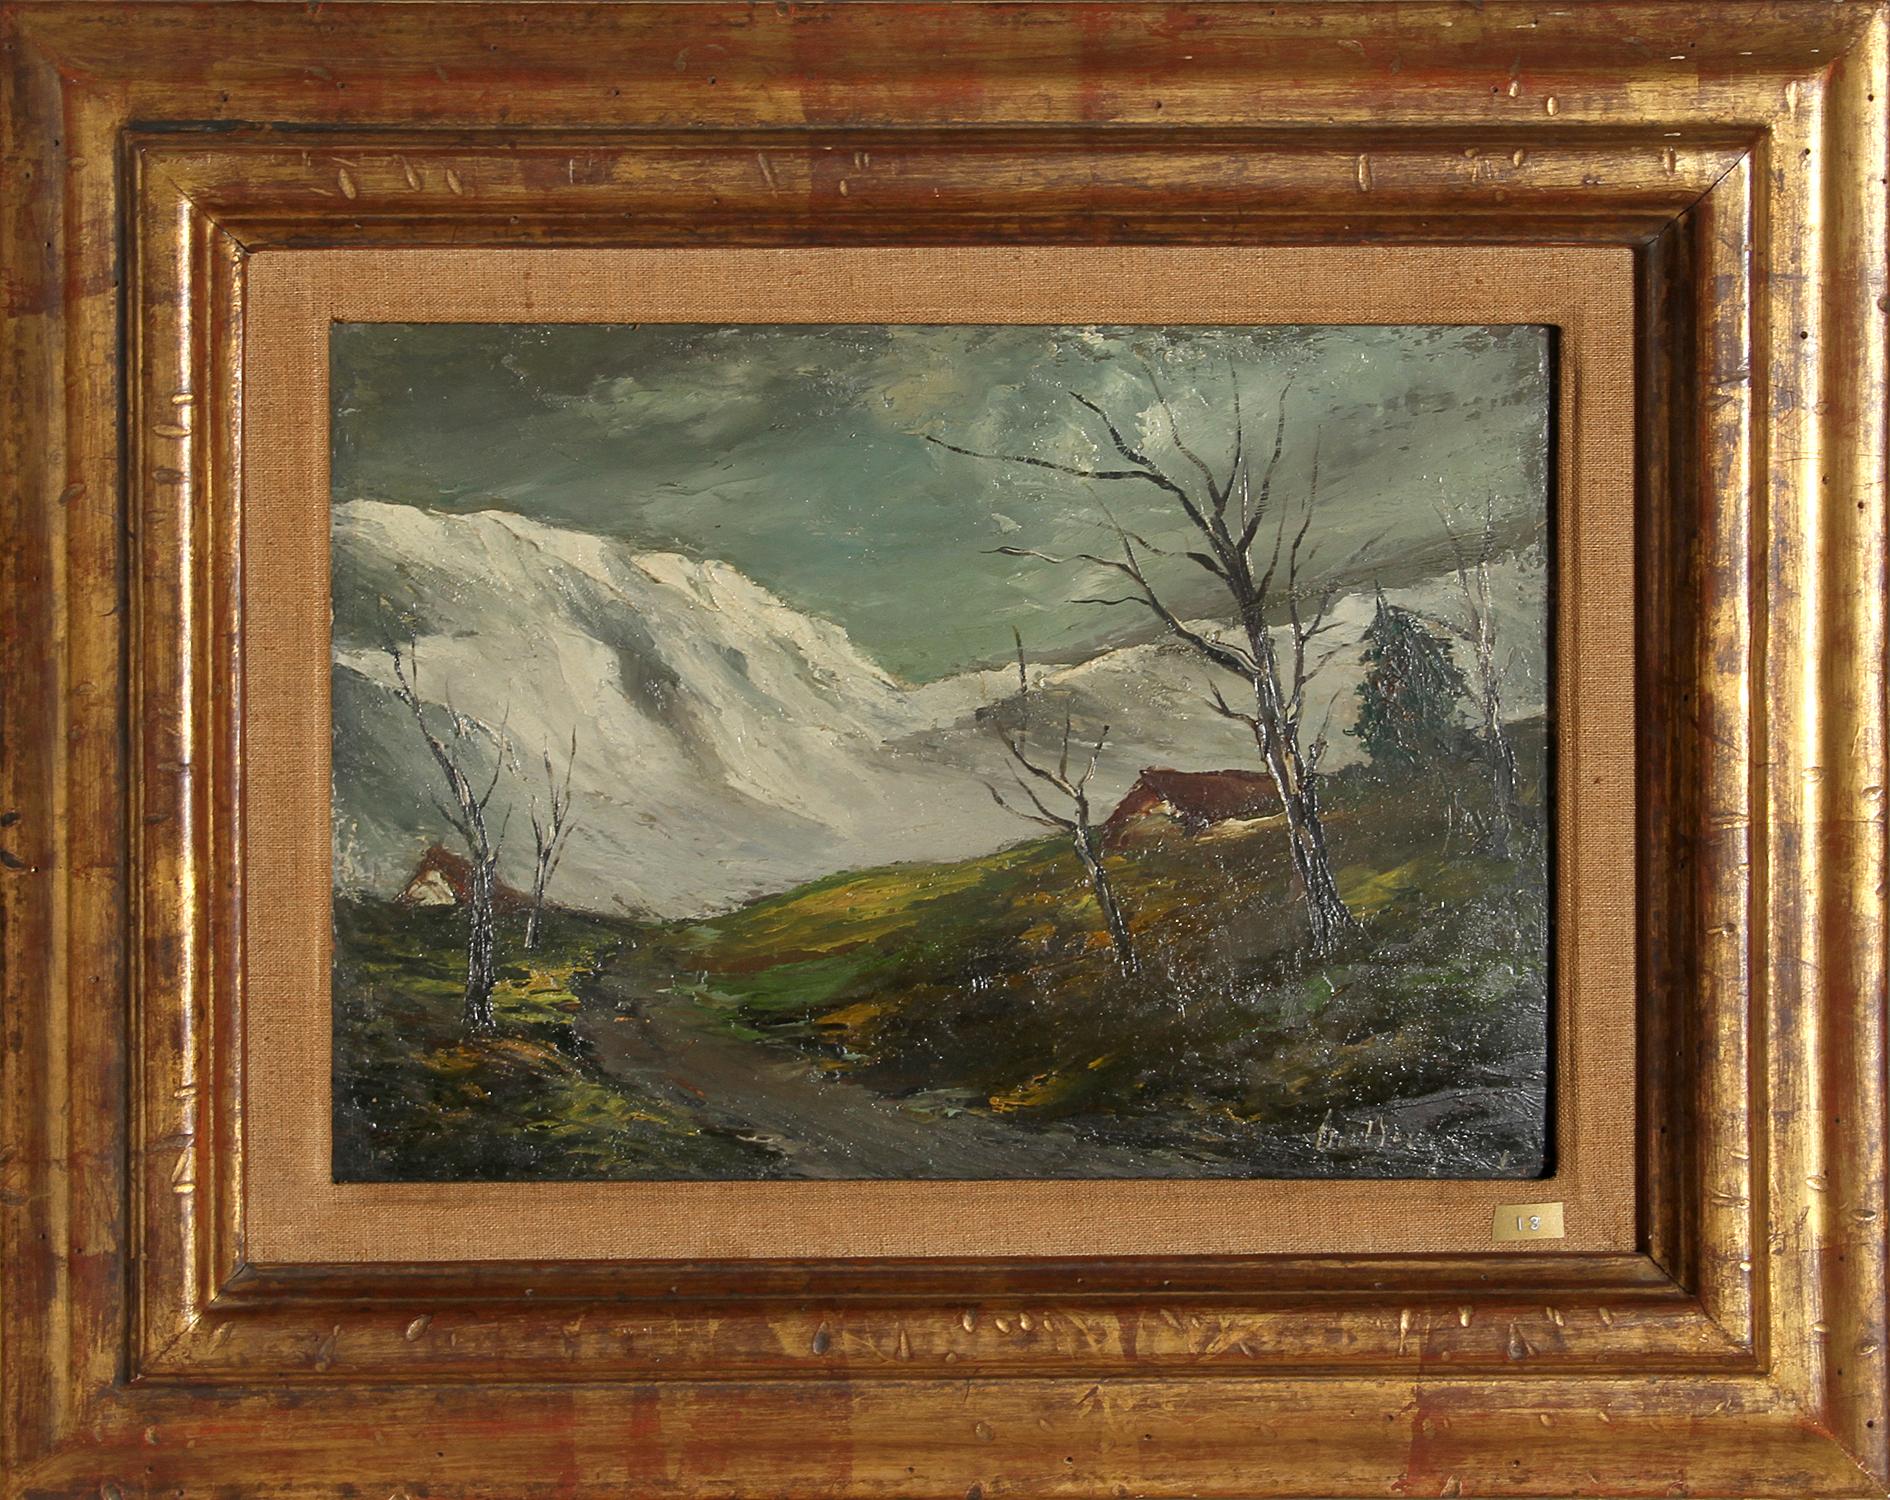 Artistics : Marcel Bouyeron, Français (1890 - 1976)
Titre : Neige en Cantal
Année : vers 1930
Moyen d'expression : Huile sur toile, signée à gauche.
Taille : 24,13 cm x 33,02 cm (9,5 in. x 13 in.)
Taille du cadre : 16 x 20 pouces